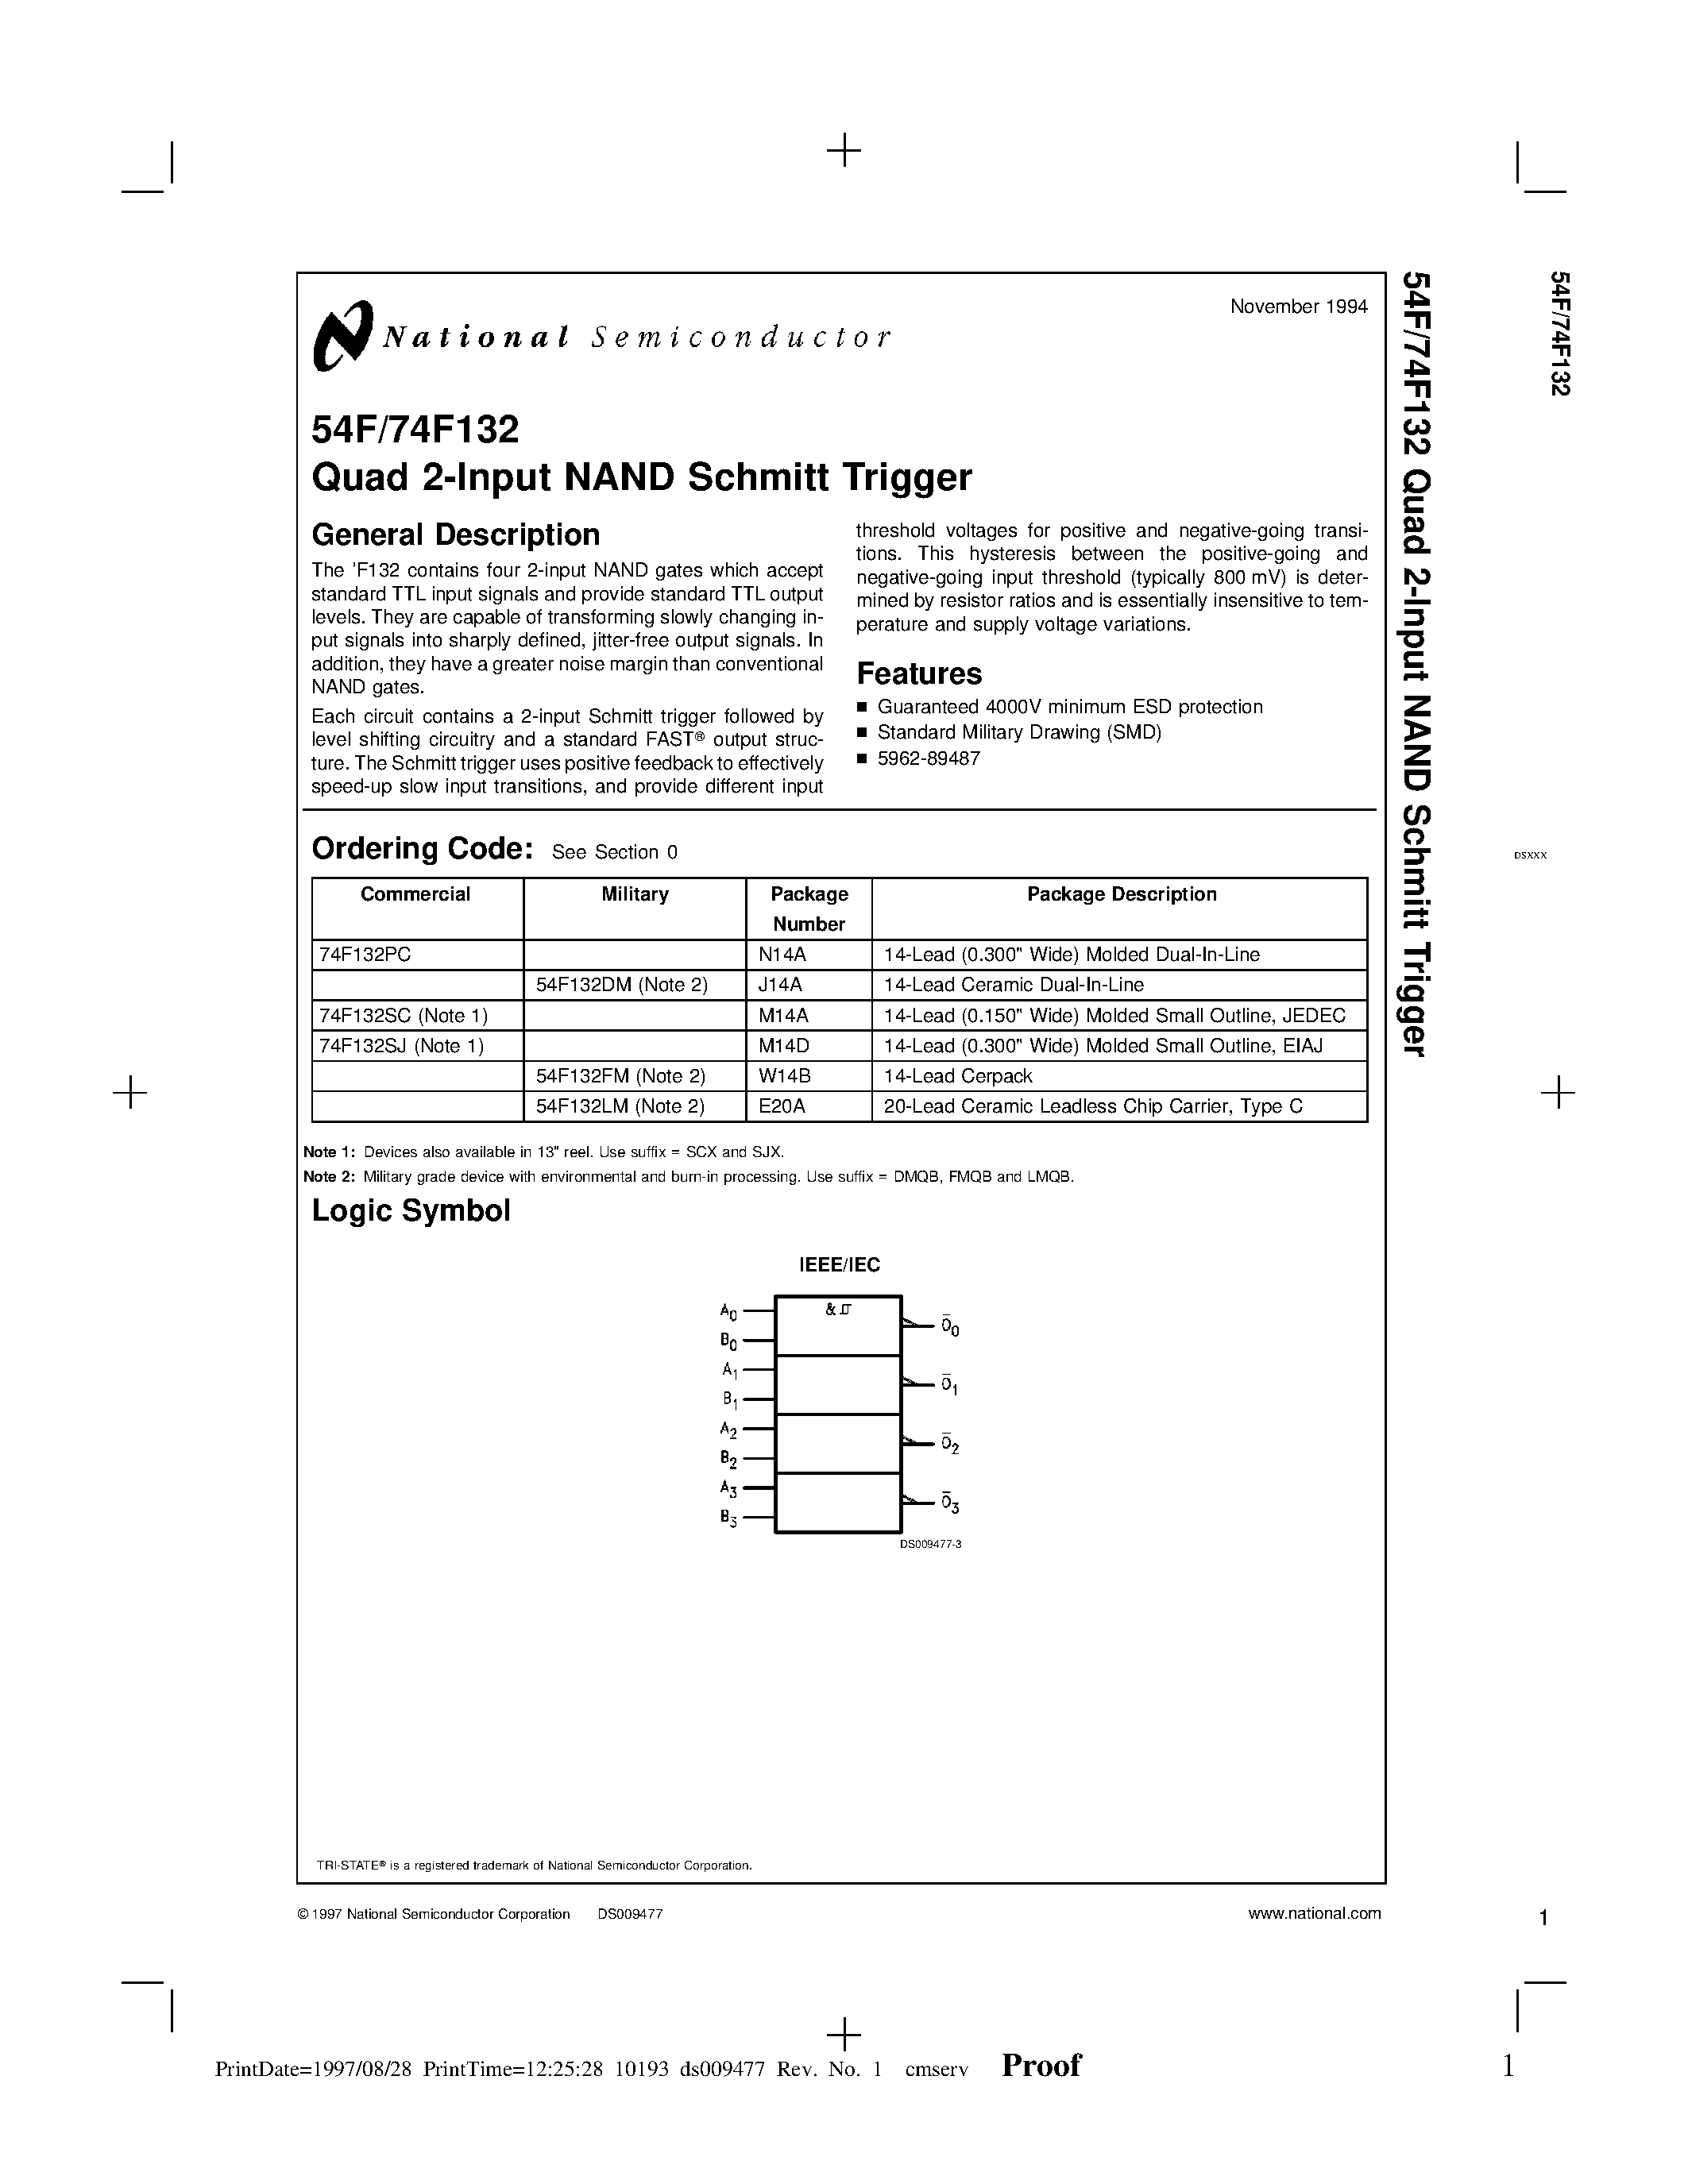 Даташит 74F132PC - Quad 2-Input NAND Schmitt Trigger страница 1